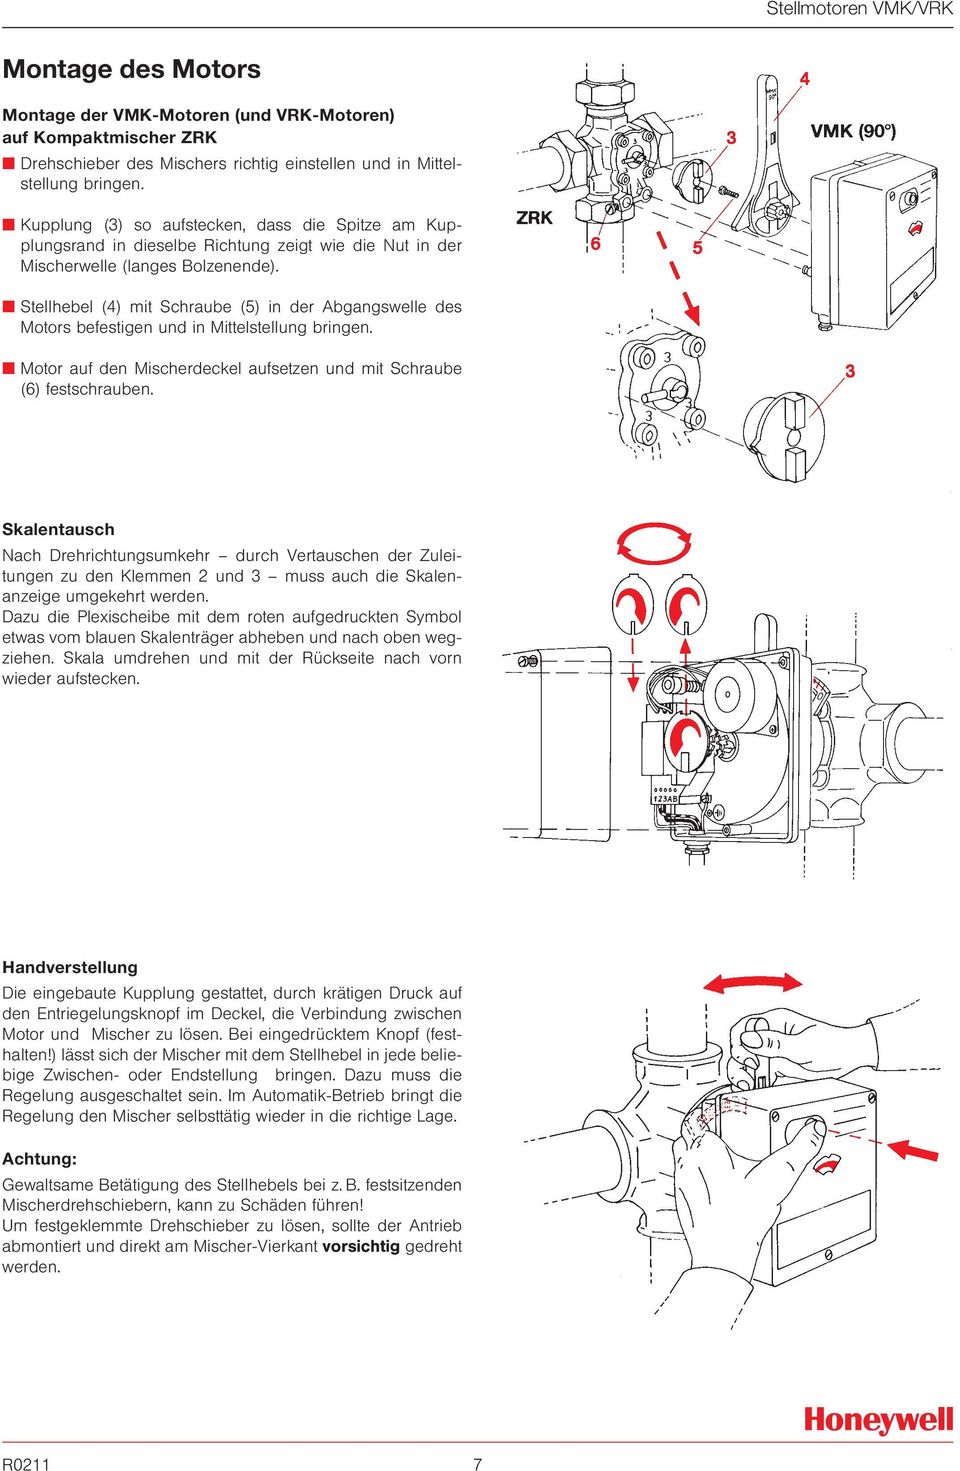 Stellhebel (4) mit Schraube (5) in der Abgangswelle des Motors befestigen und in Mittelstellung bringen. Motor auf den Mischerdeckel aufsetzen und mit Schraube (6) festschrauben.